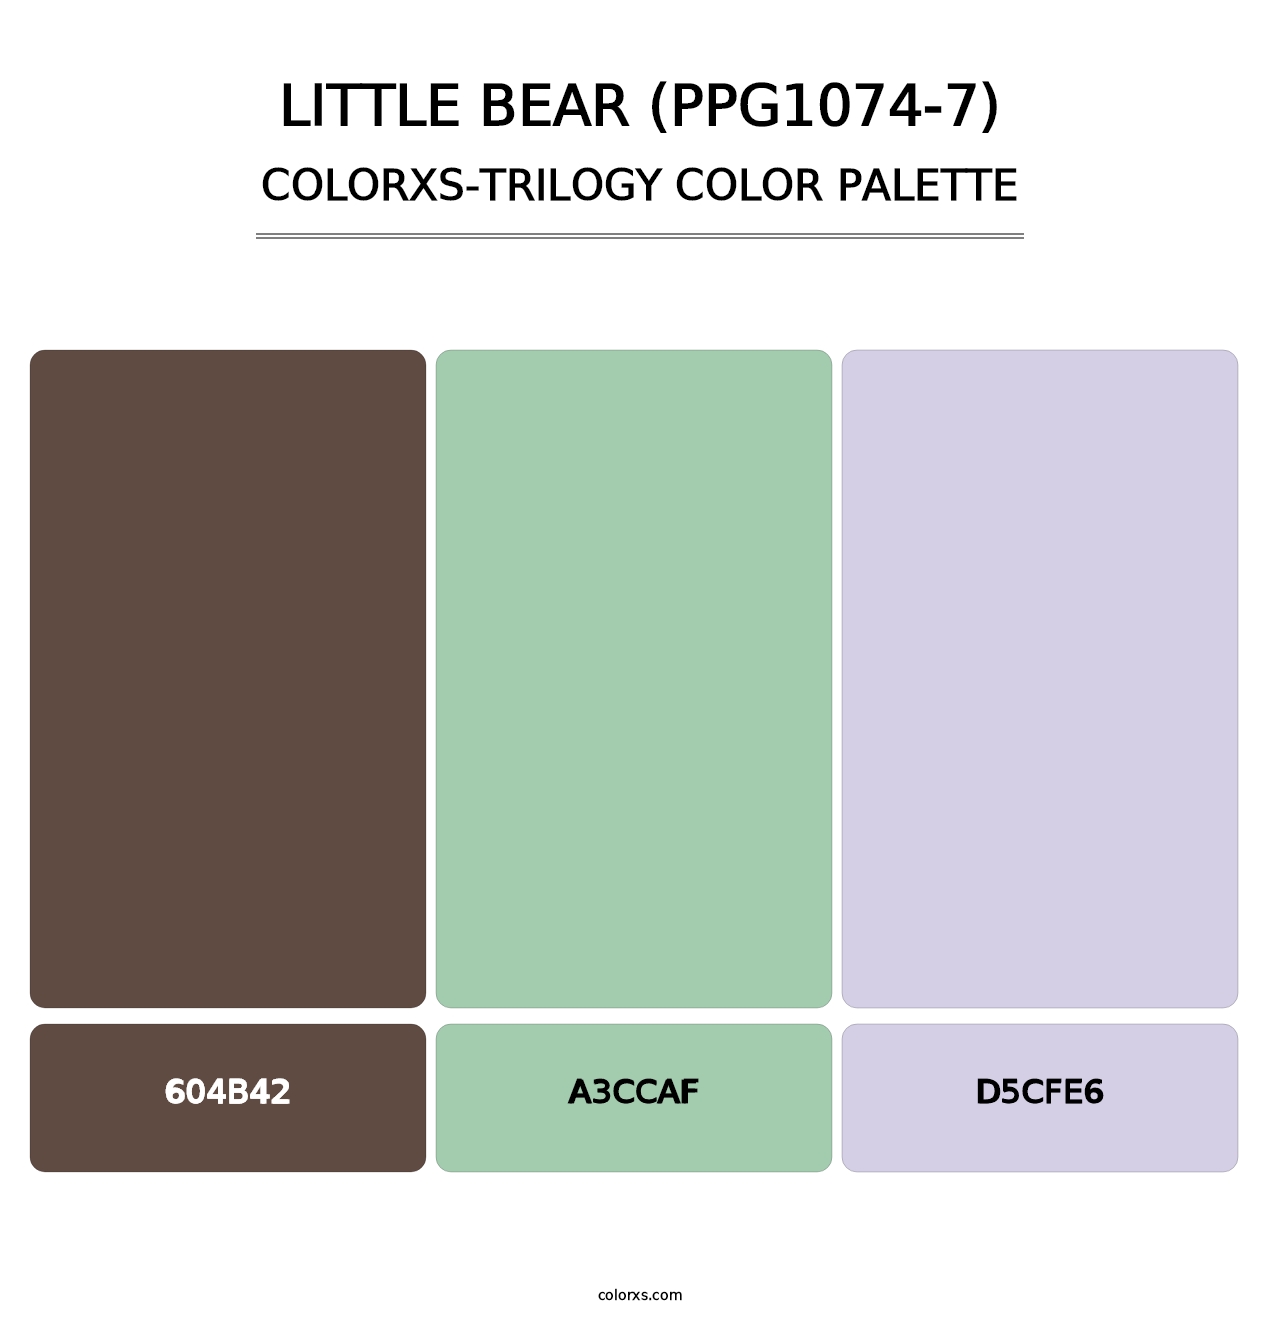 Little Bear (PPG1074-7) - Colorxs Trilogy Palette